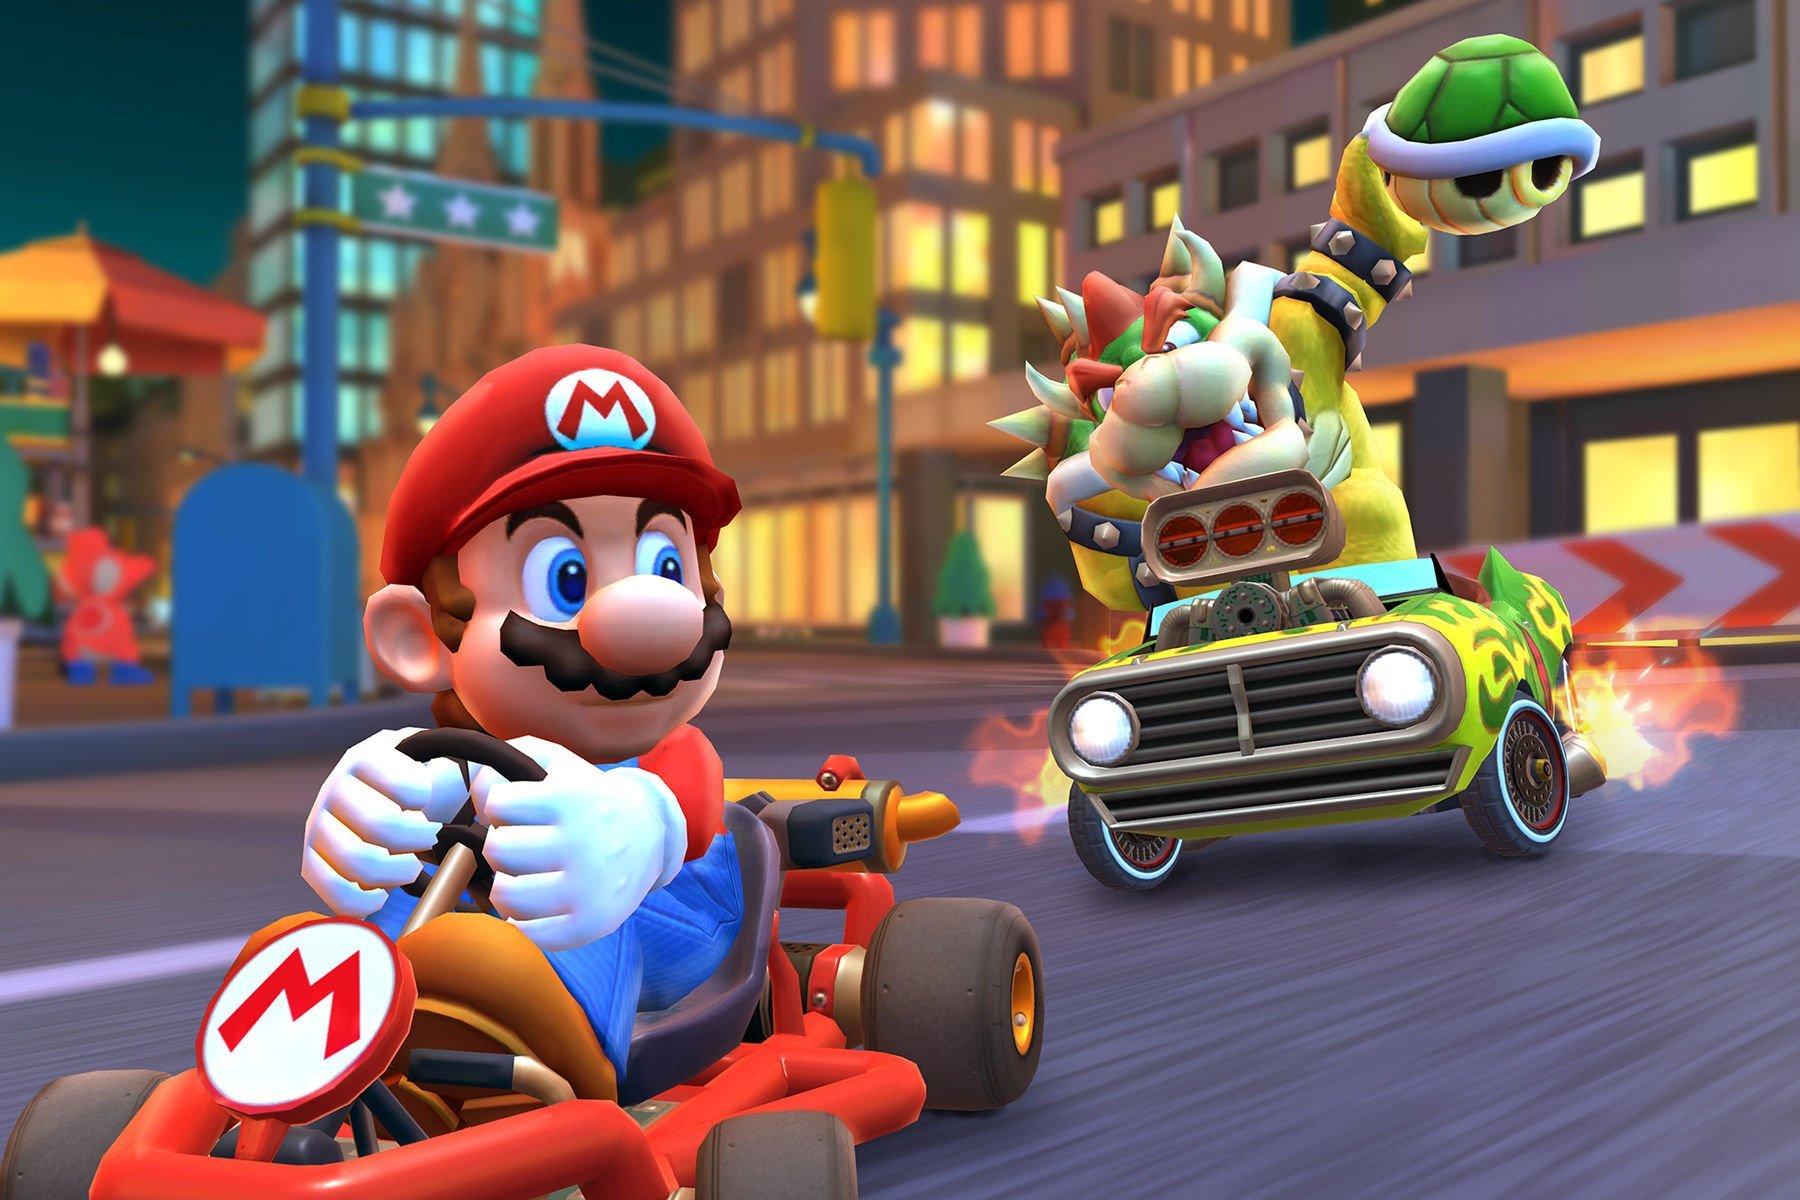 10 Best Gift Ideas For Mario Kart Fans